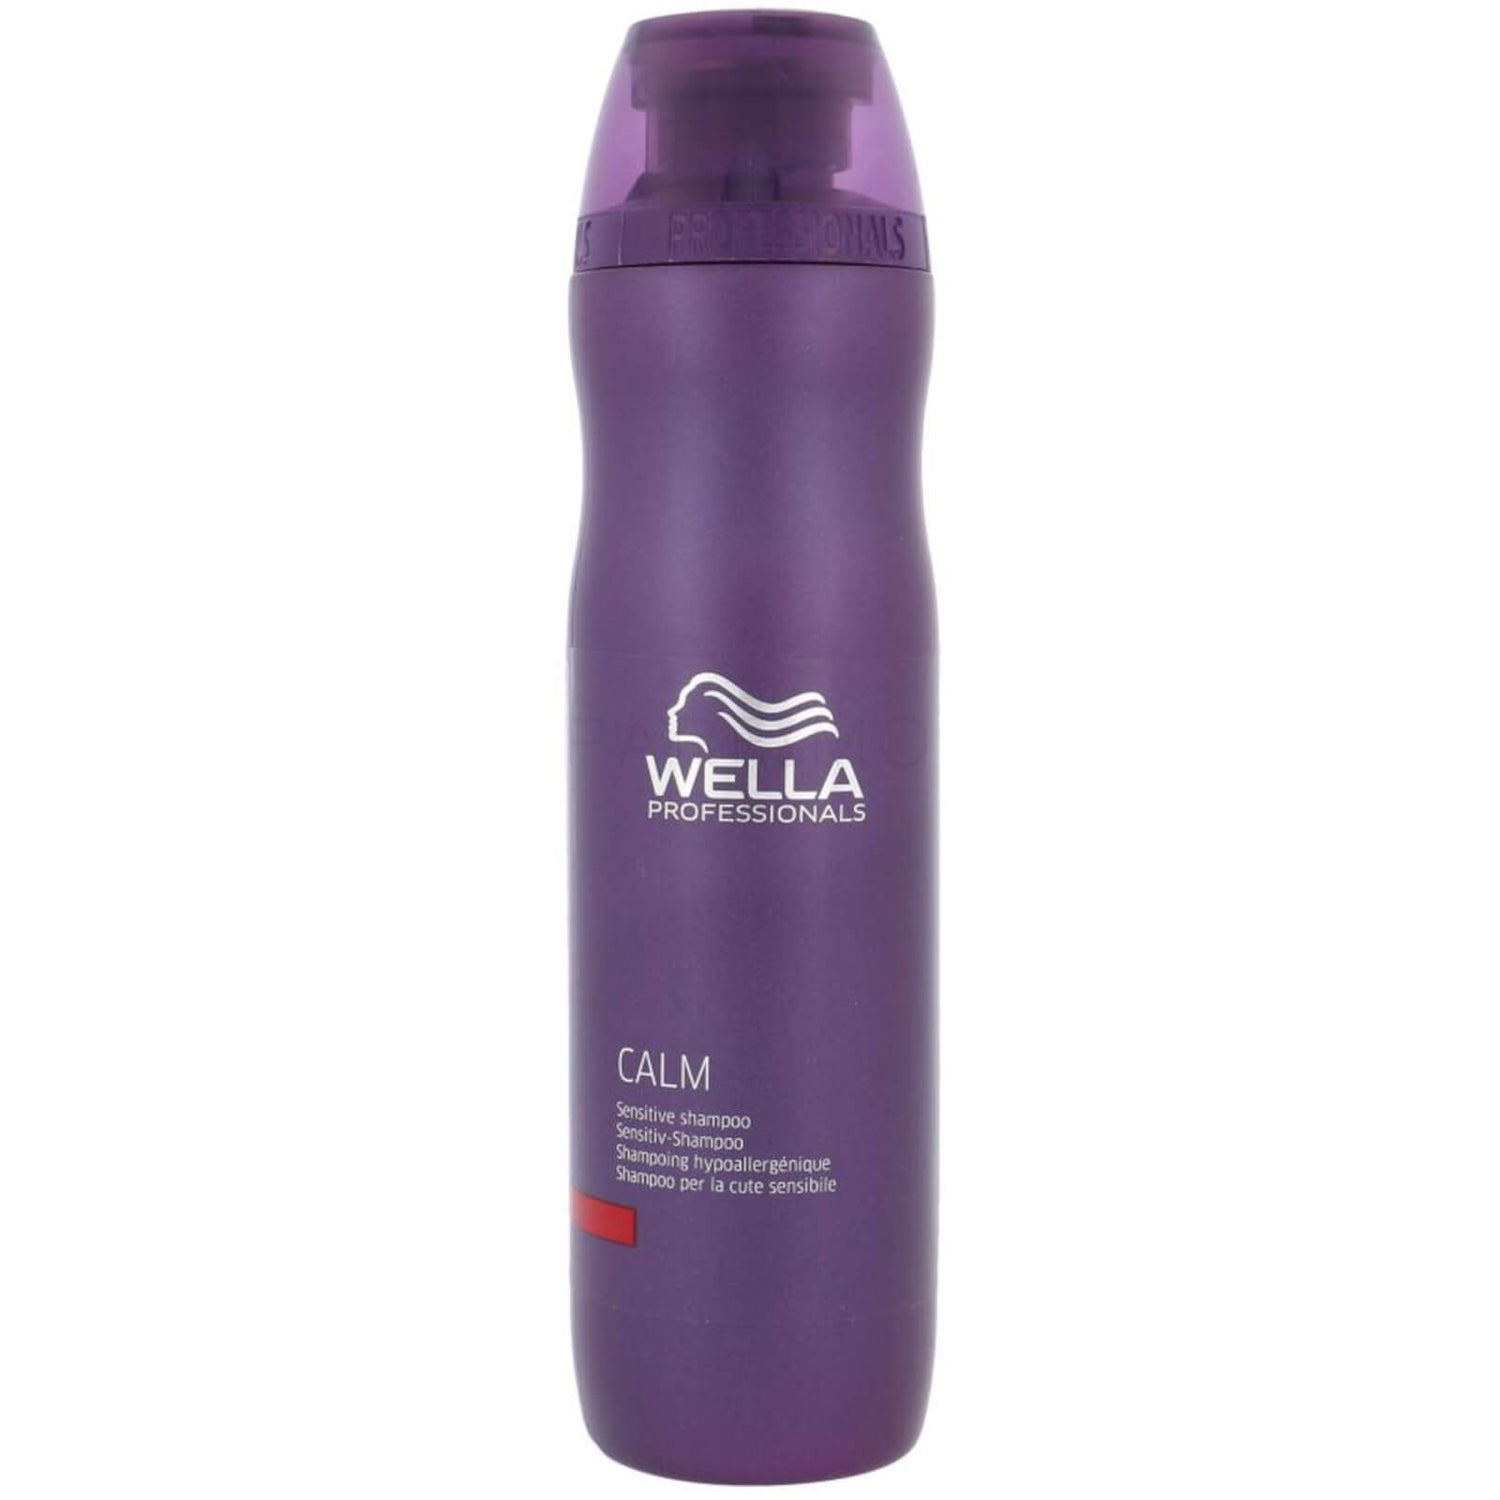 Wella Professionals Calm Sensitive Shampoo (250ml)